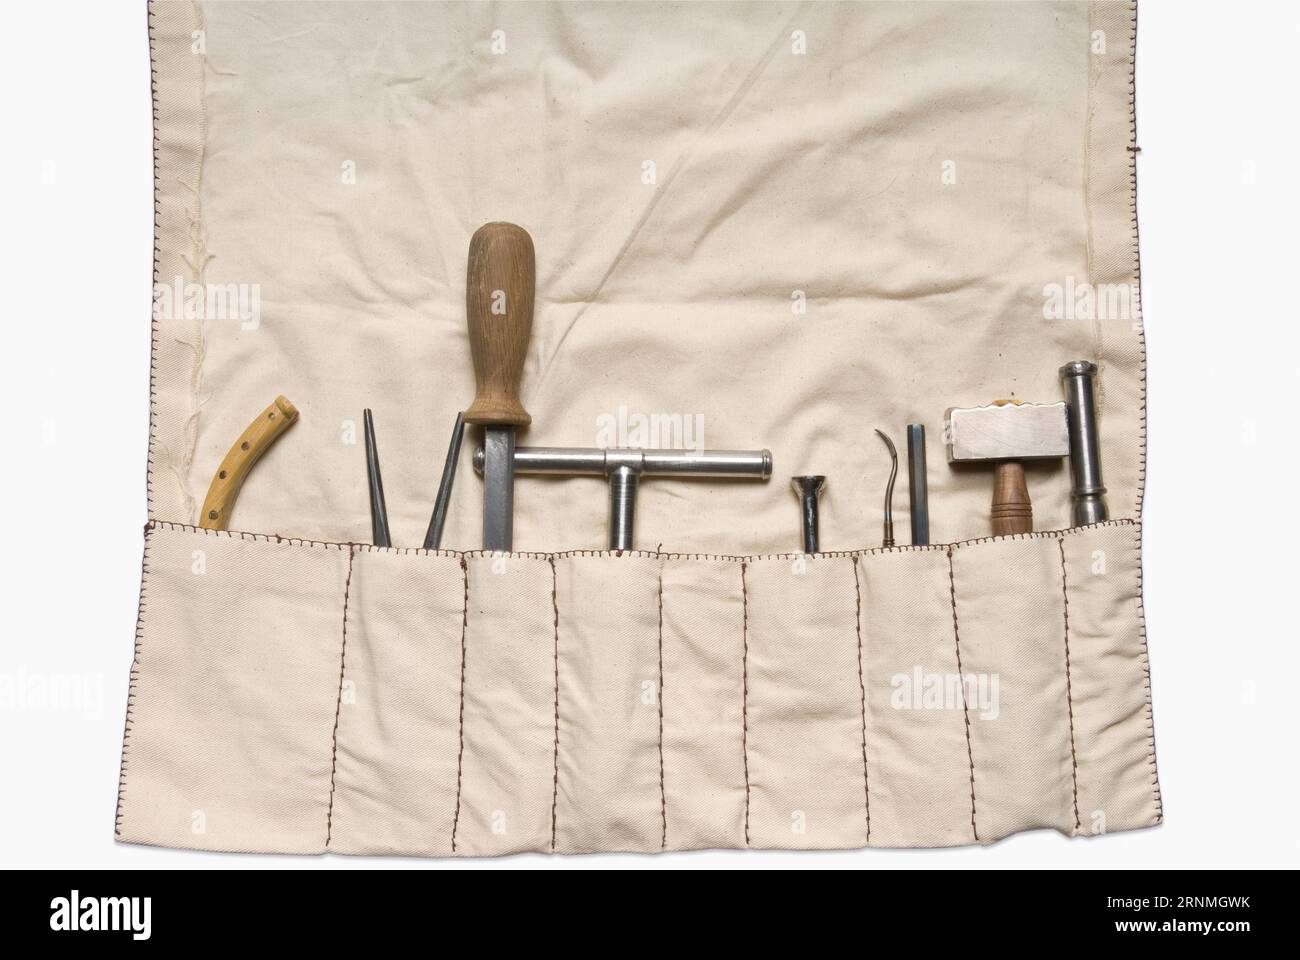 Trepinierende und orthopädisch-mittelalterliche medizinische Instrumente Stockfoto